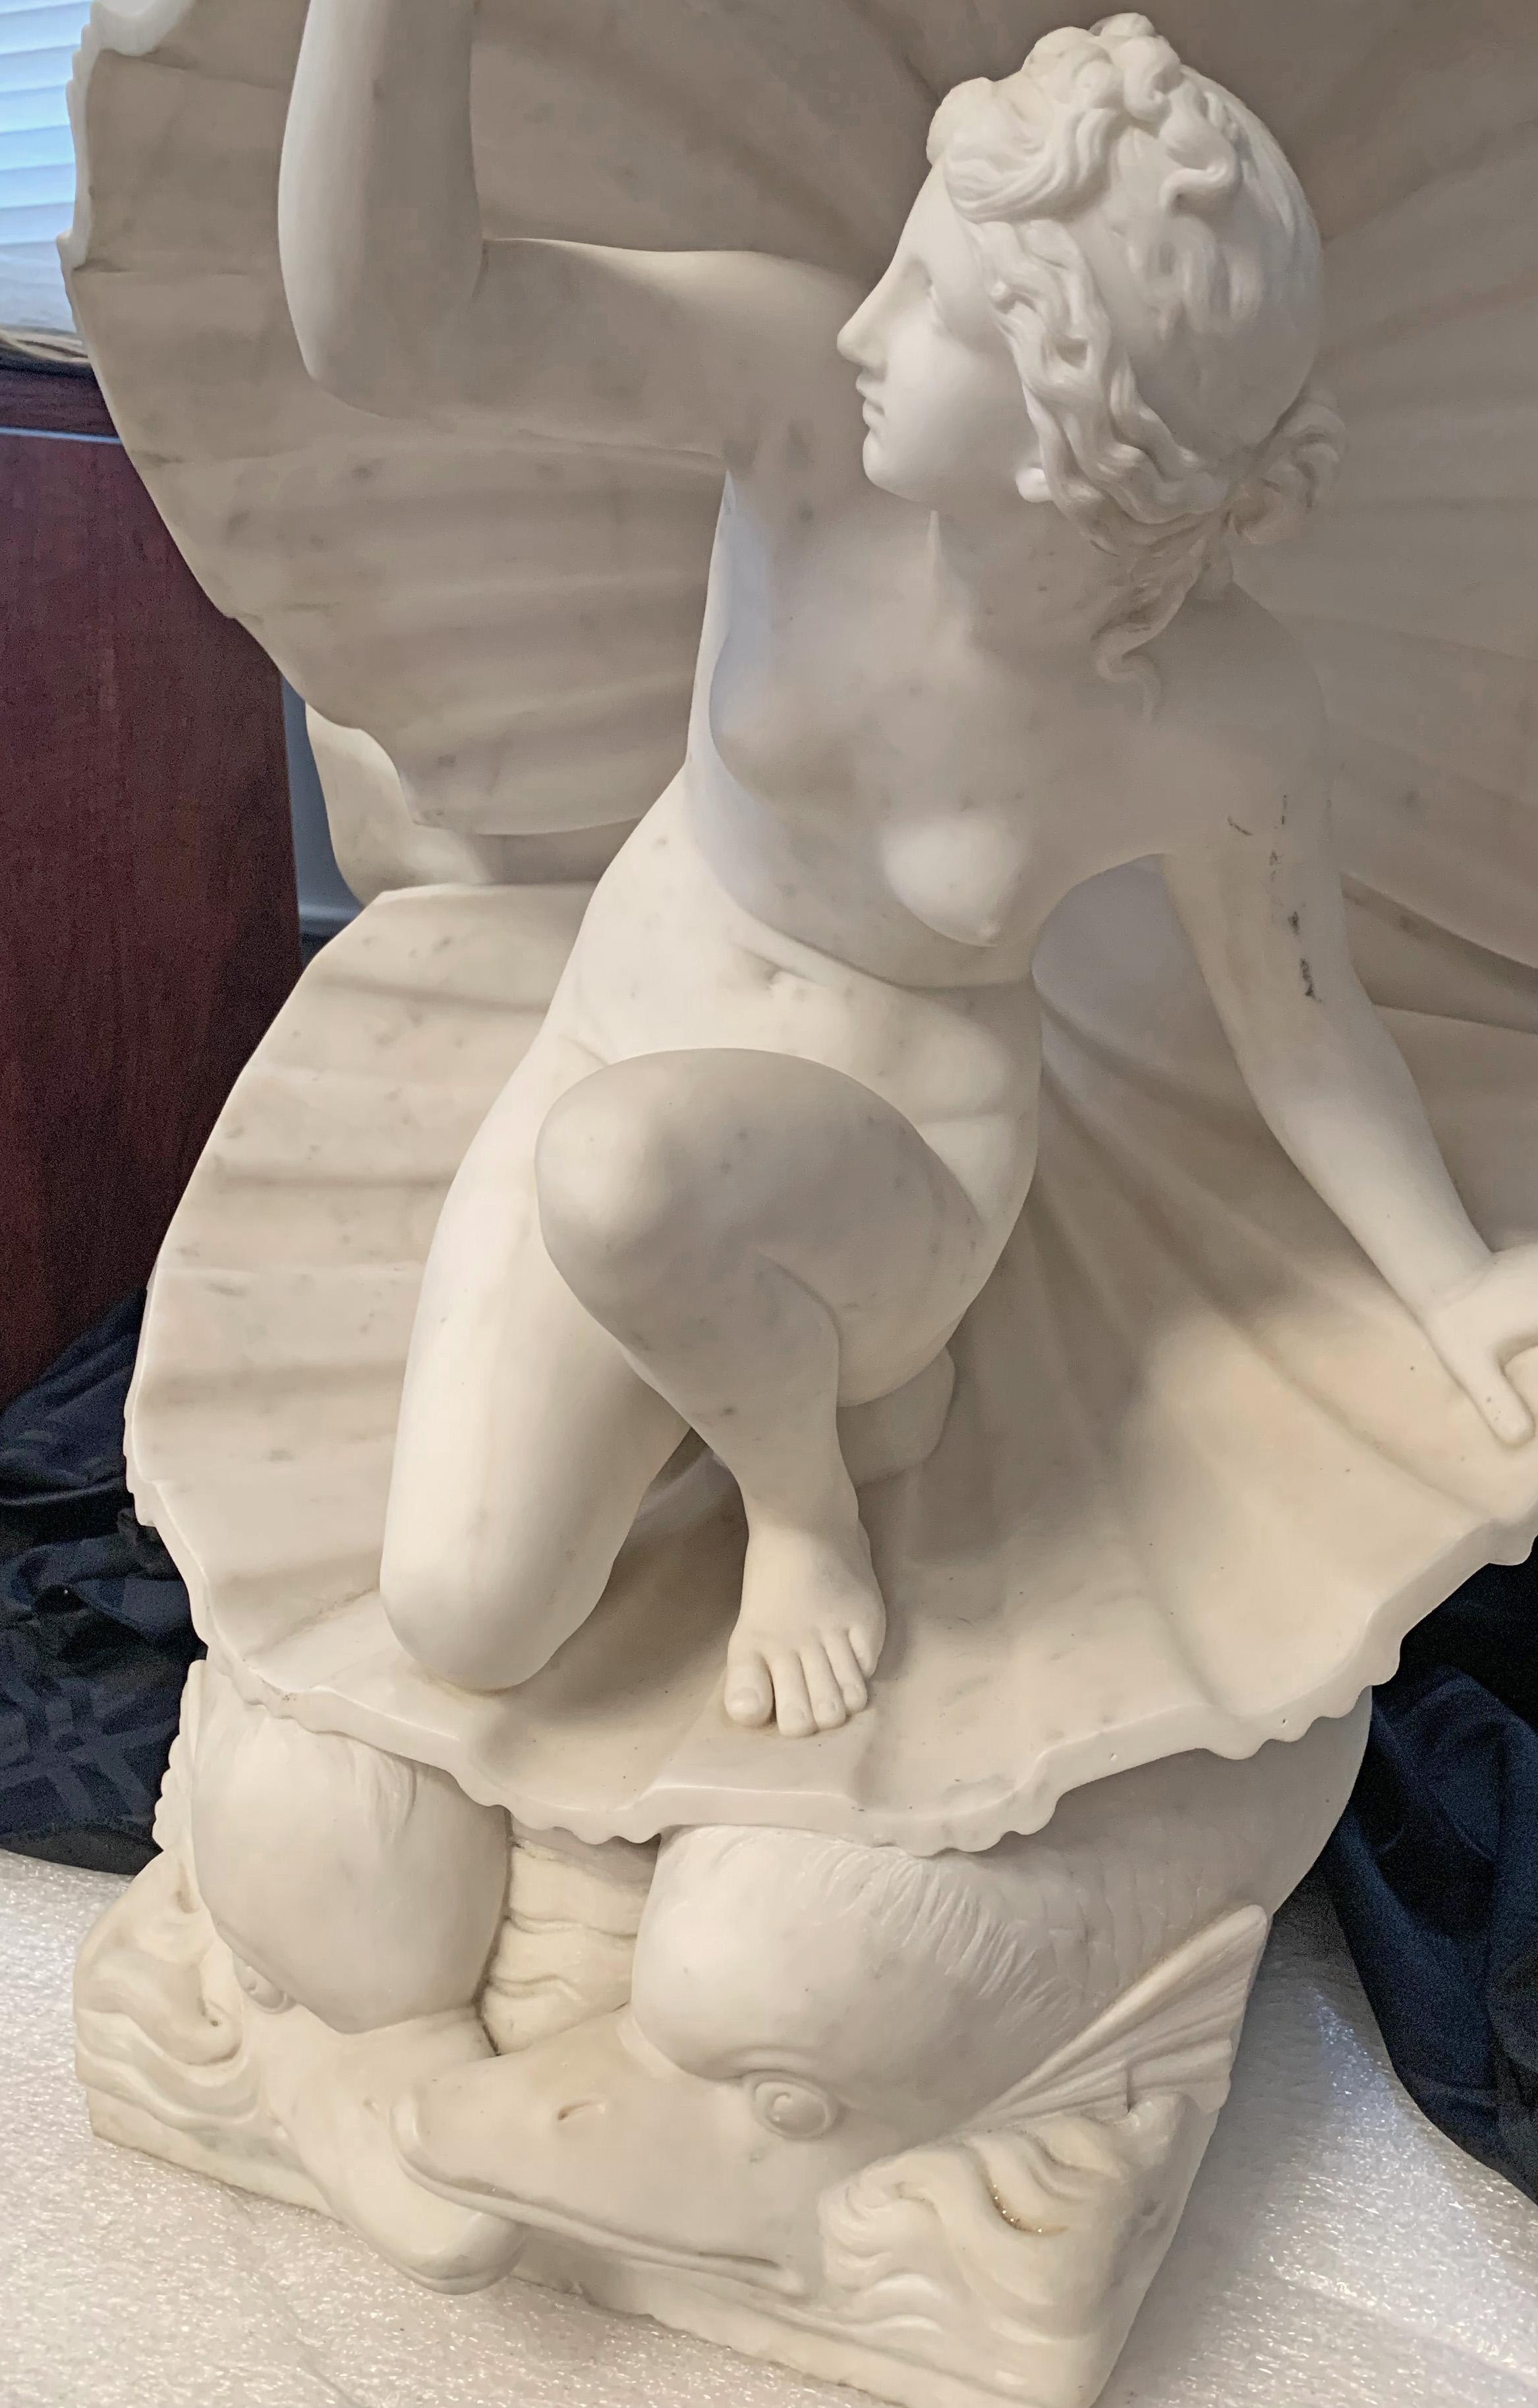 Exquisément sculptée, probablement par un artiste italien, cette belle et charmante sculpture en marbre représente une Vénus nue émergeant d'une coquille Saint-Jacques, le tout soutenu par un couple de dauphins. Les détails du visage, du torse, des